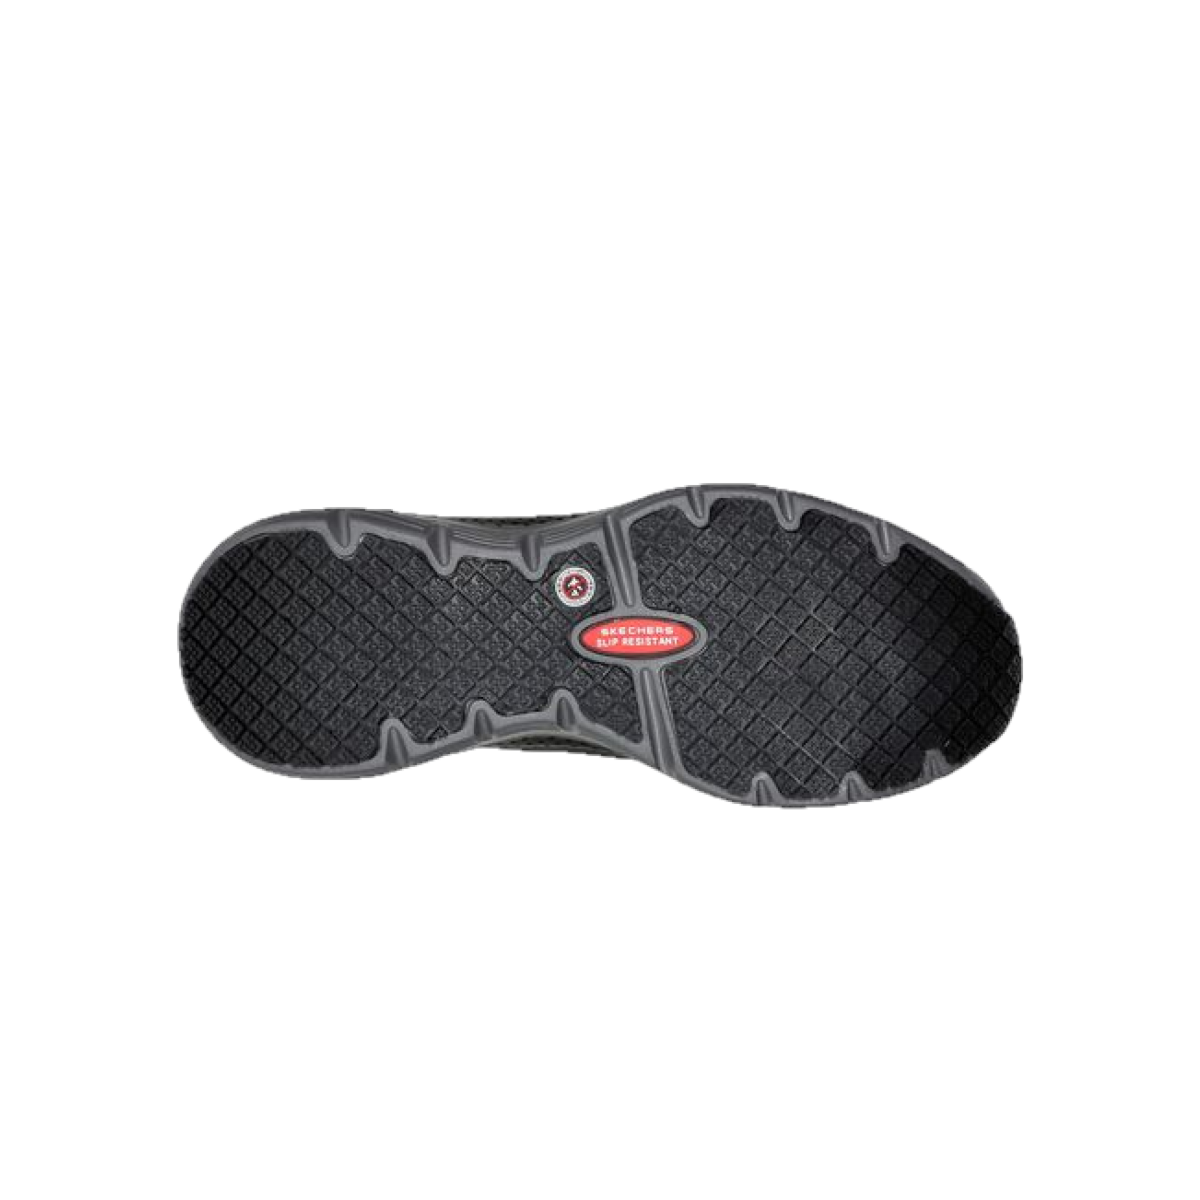 Skechers 108057 Women's Arch Fit SR - EVZAN Alloy Toe Work Shoes